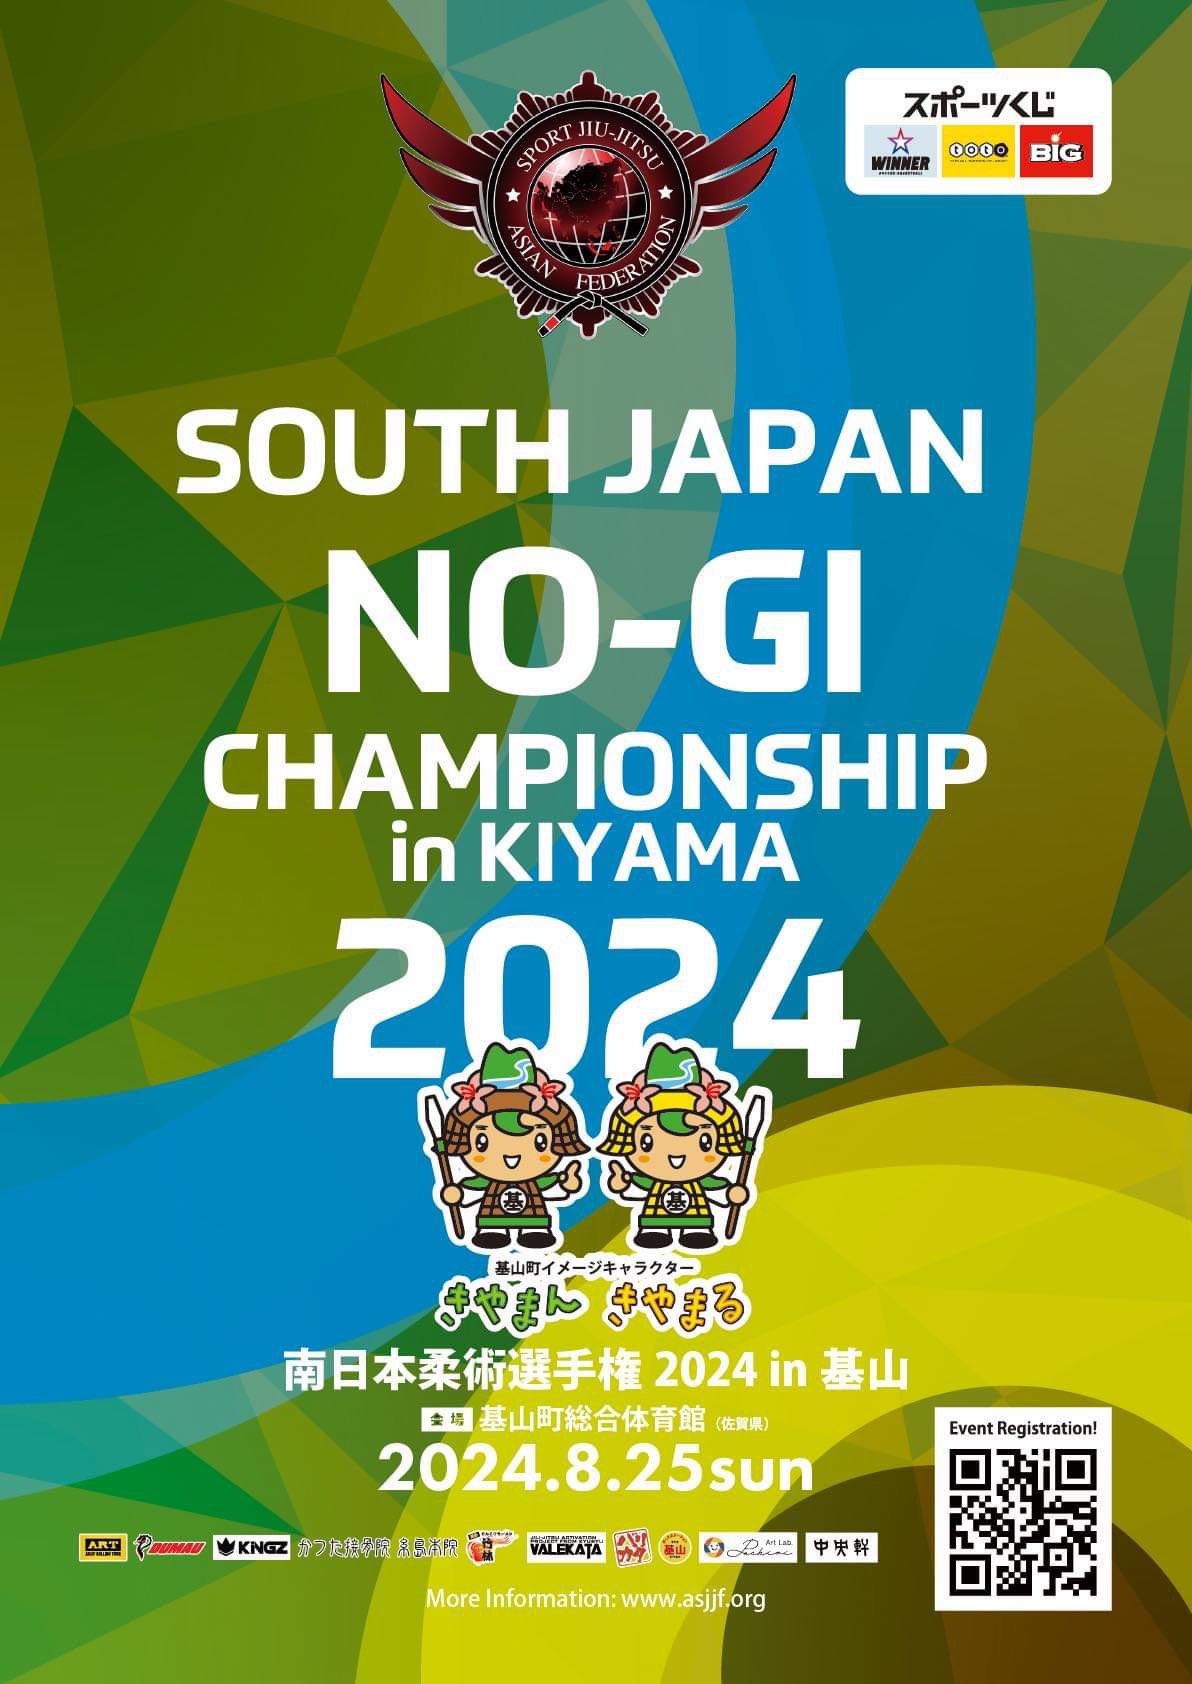 south japan no-gi championship 2024 in kiyama. (no-gi event)